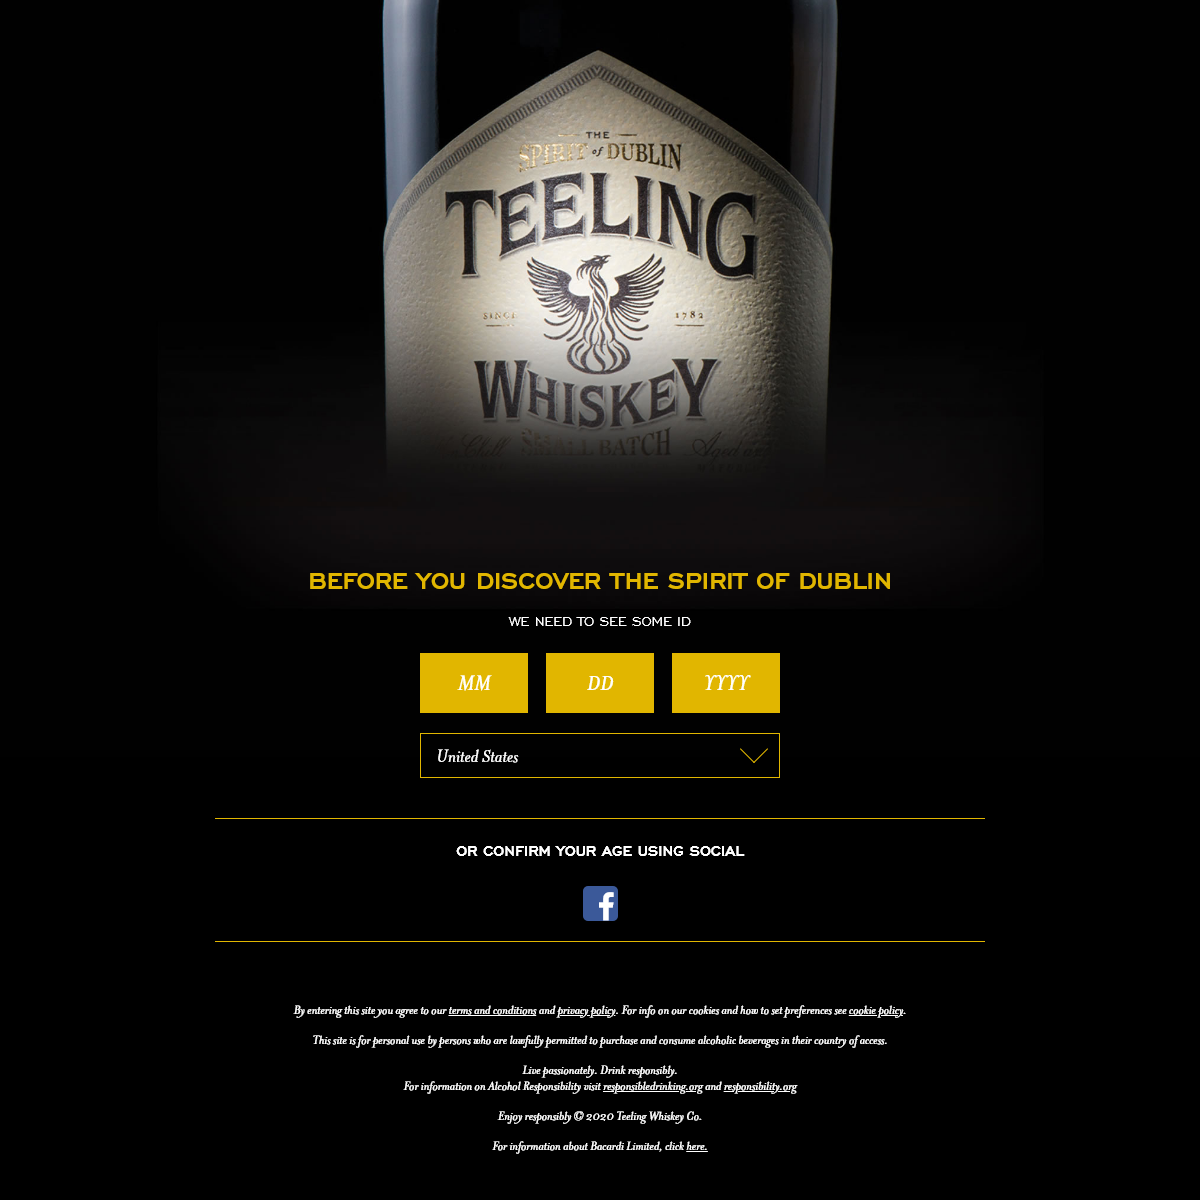 Teeling Whiskey Unconventional Irish Whiskey - Teeling Whiskey